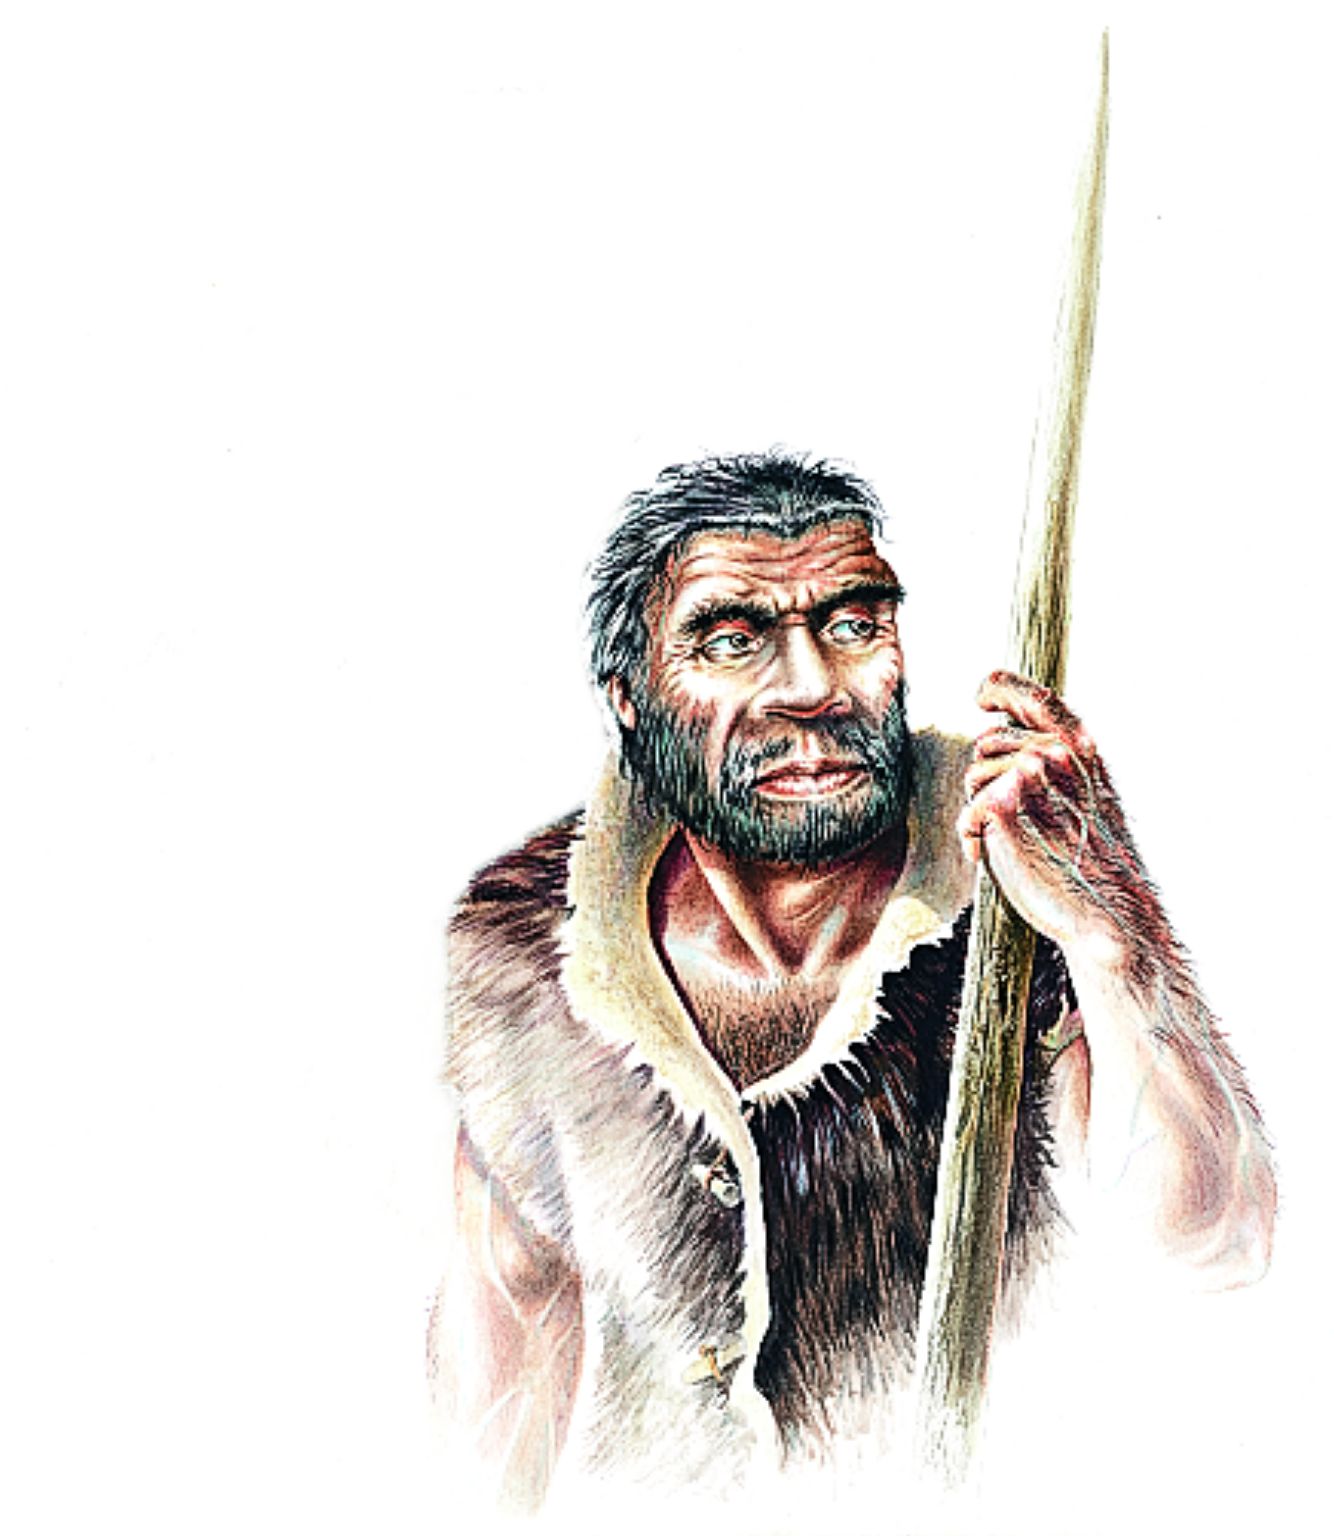 représentation de l’homme de Neandertal